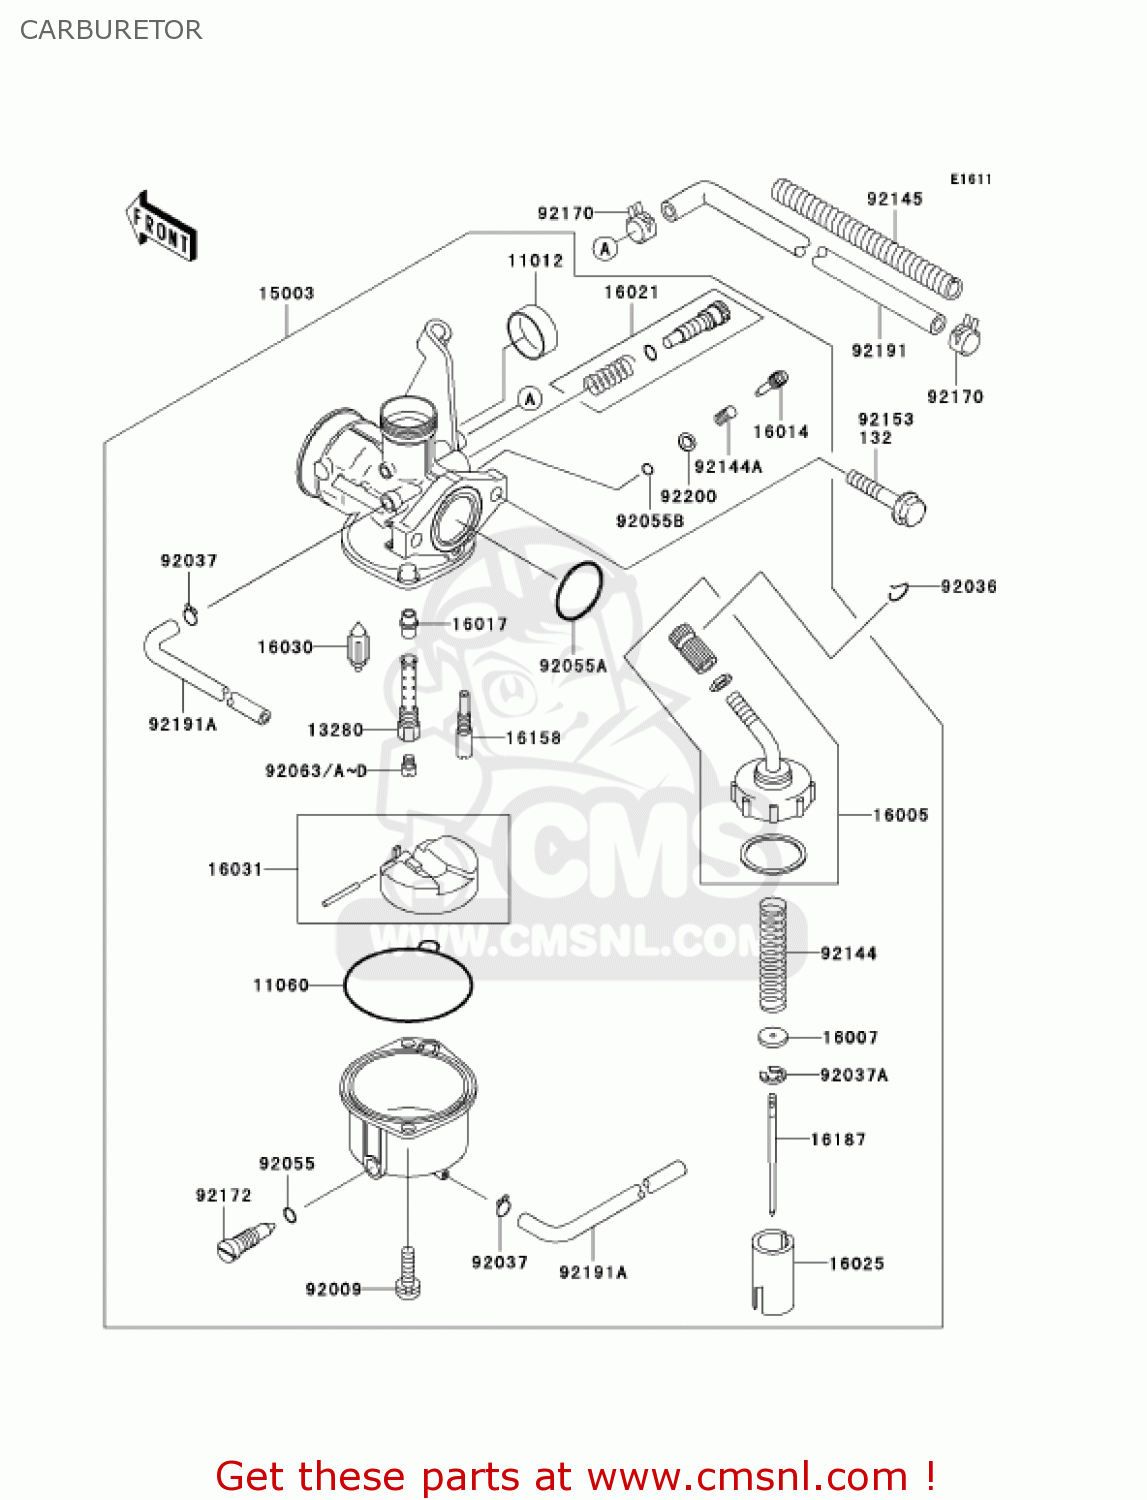 klx 110 carburetor diagram